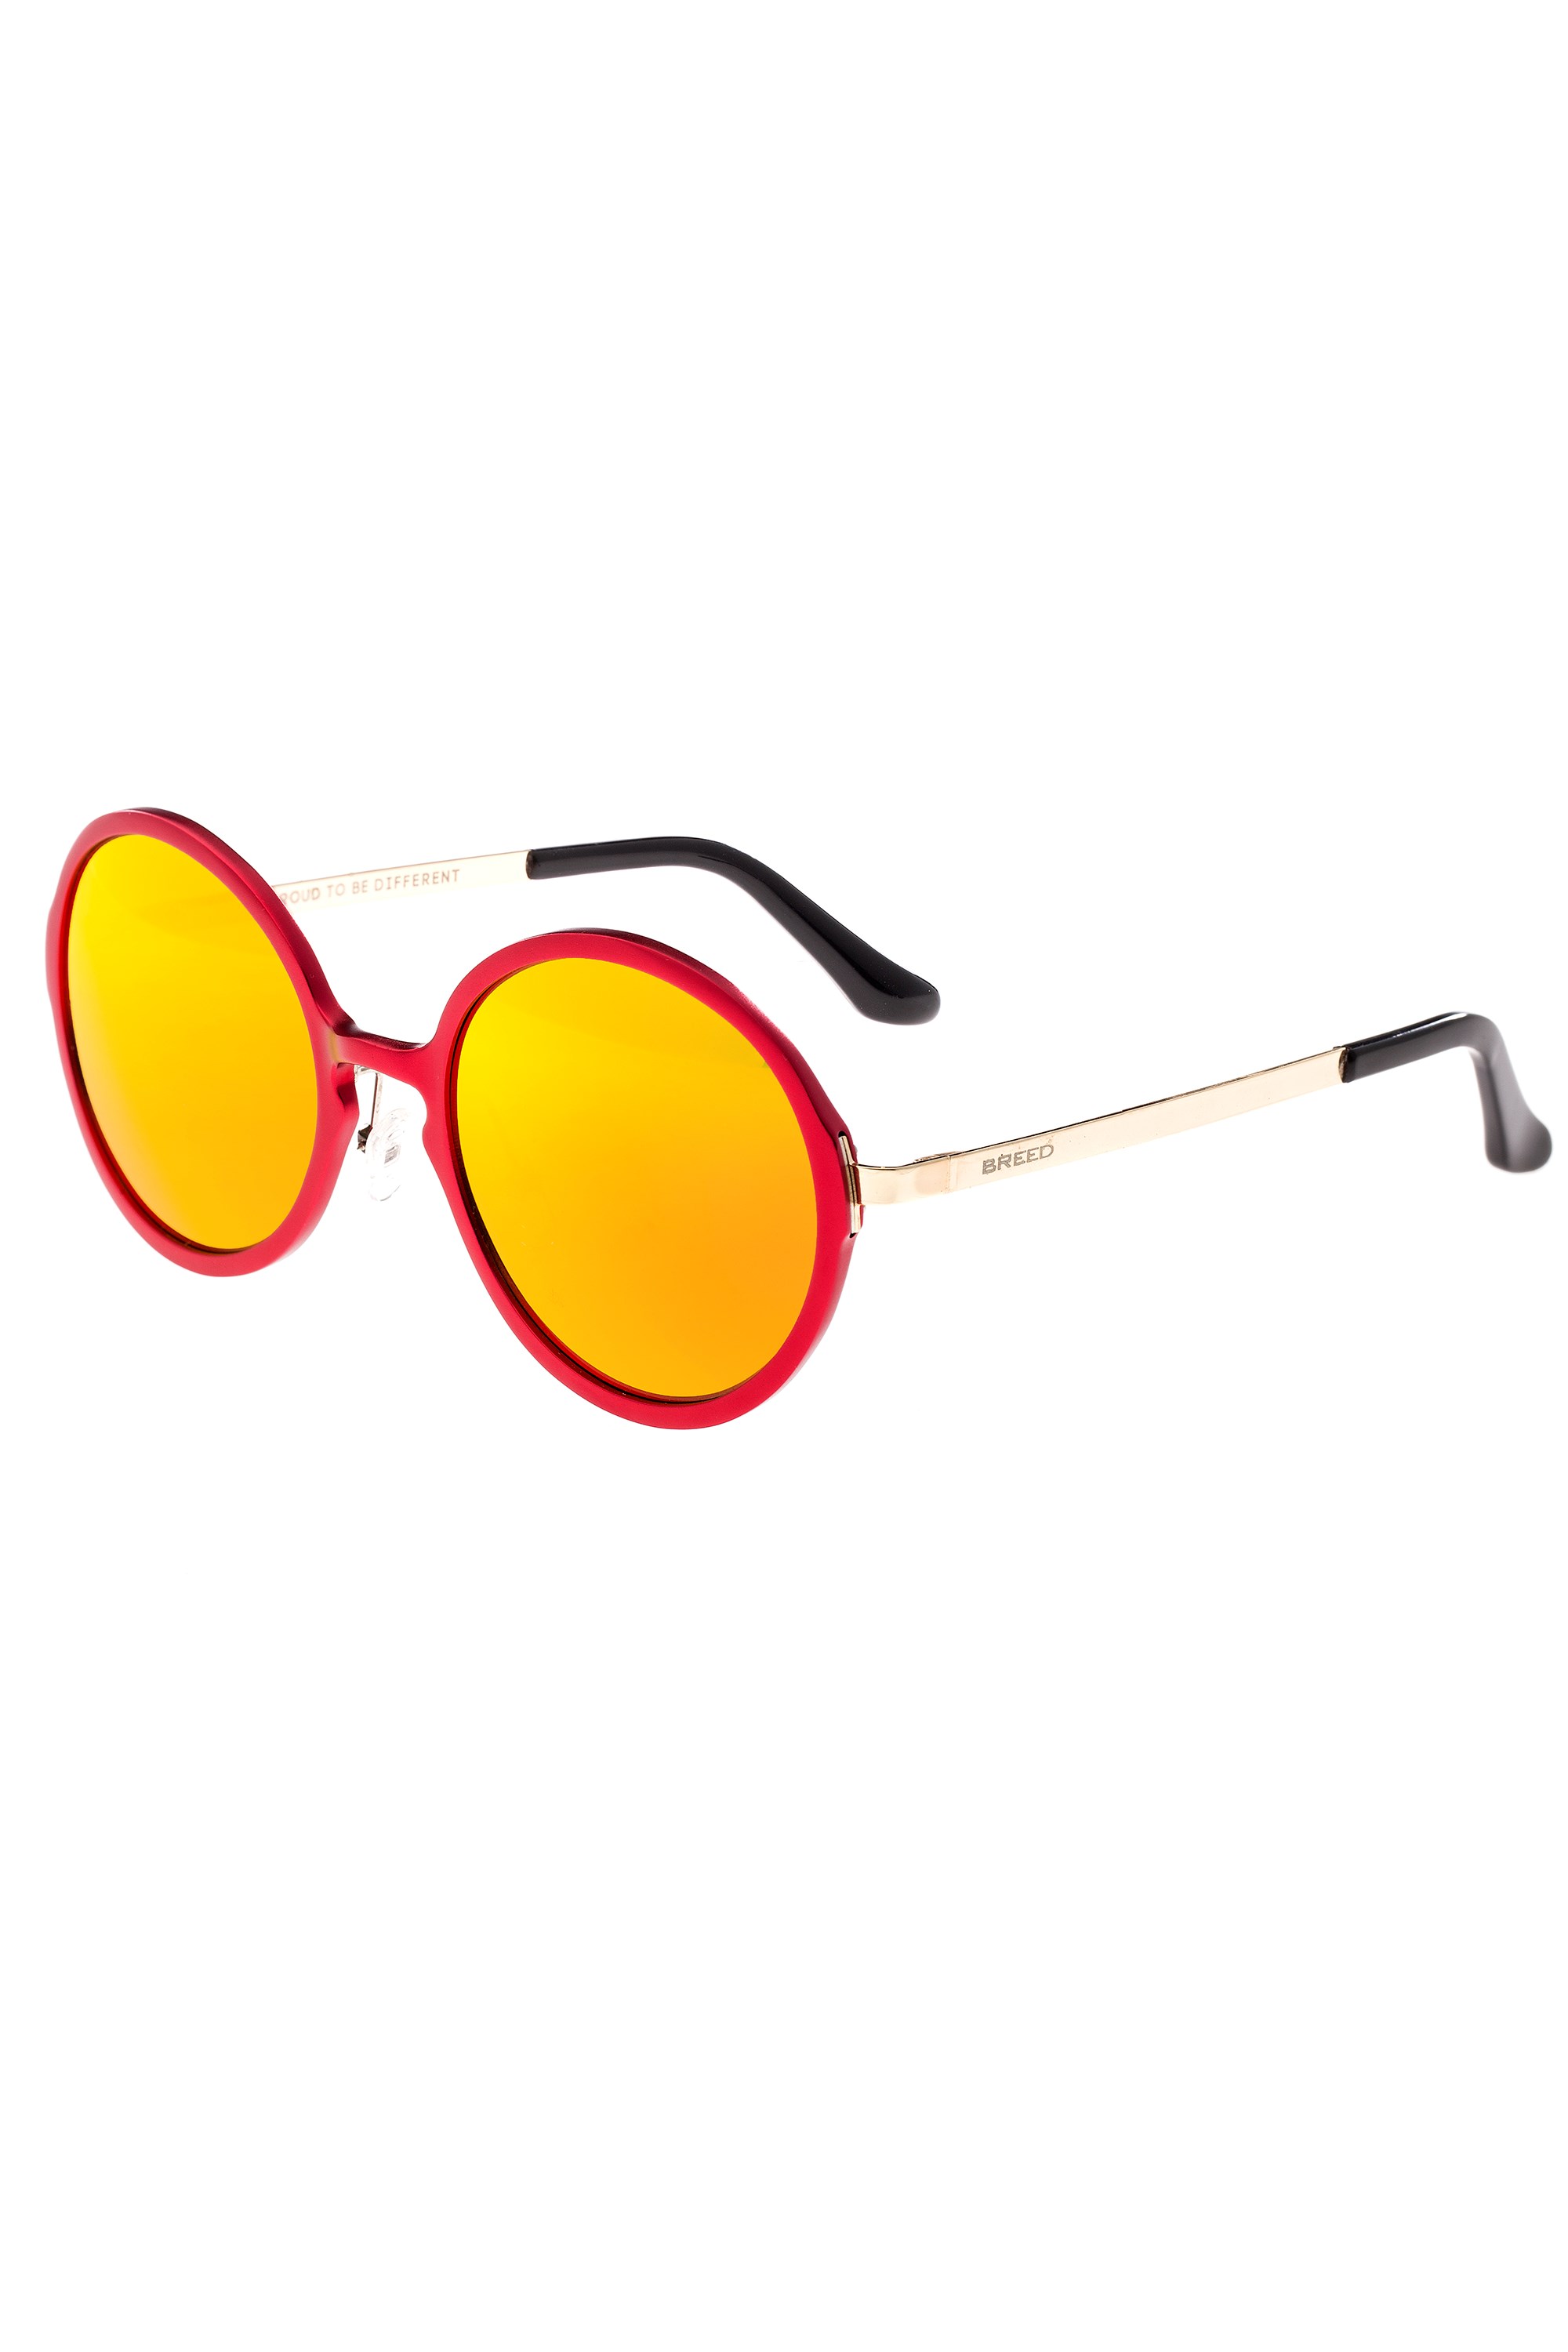 Corvus Aluminium Polarized Sunglasses -